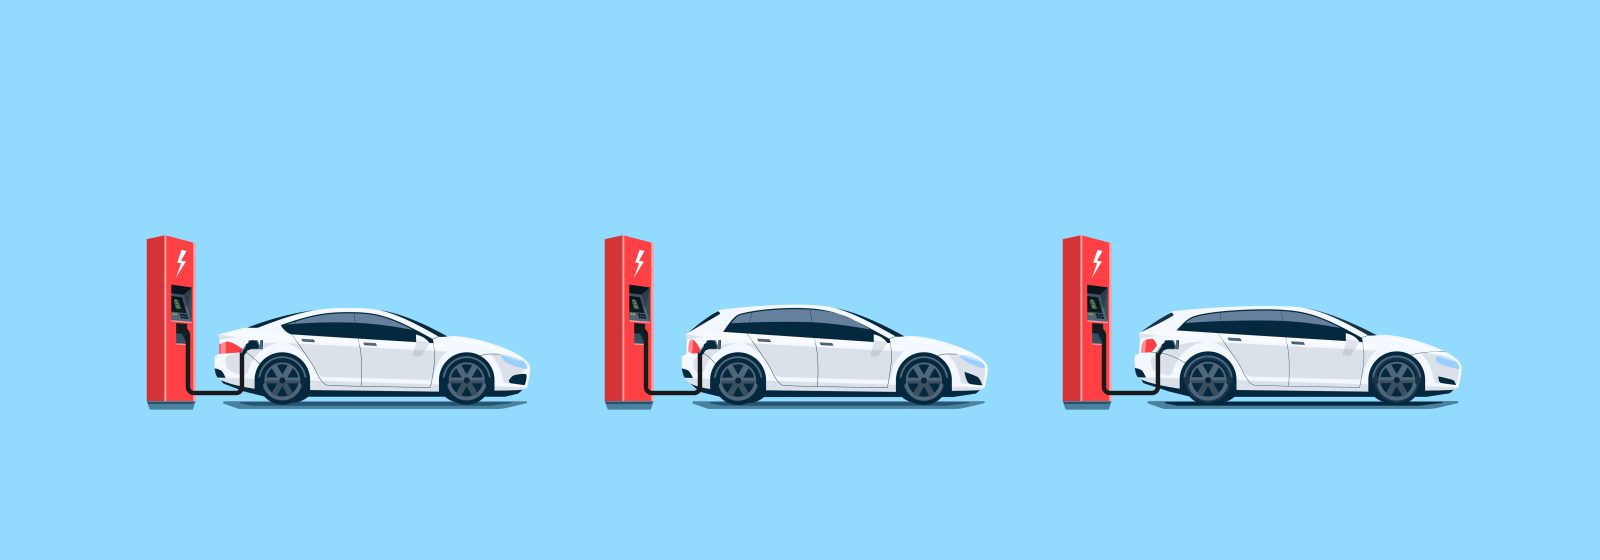 Electric Car Range Comparison